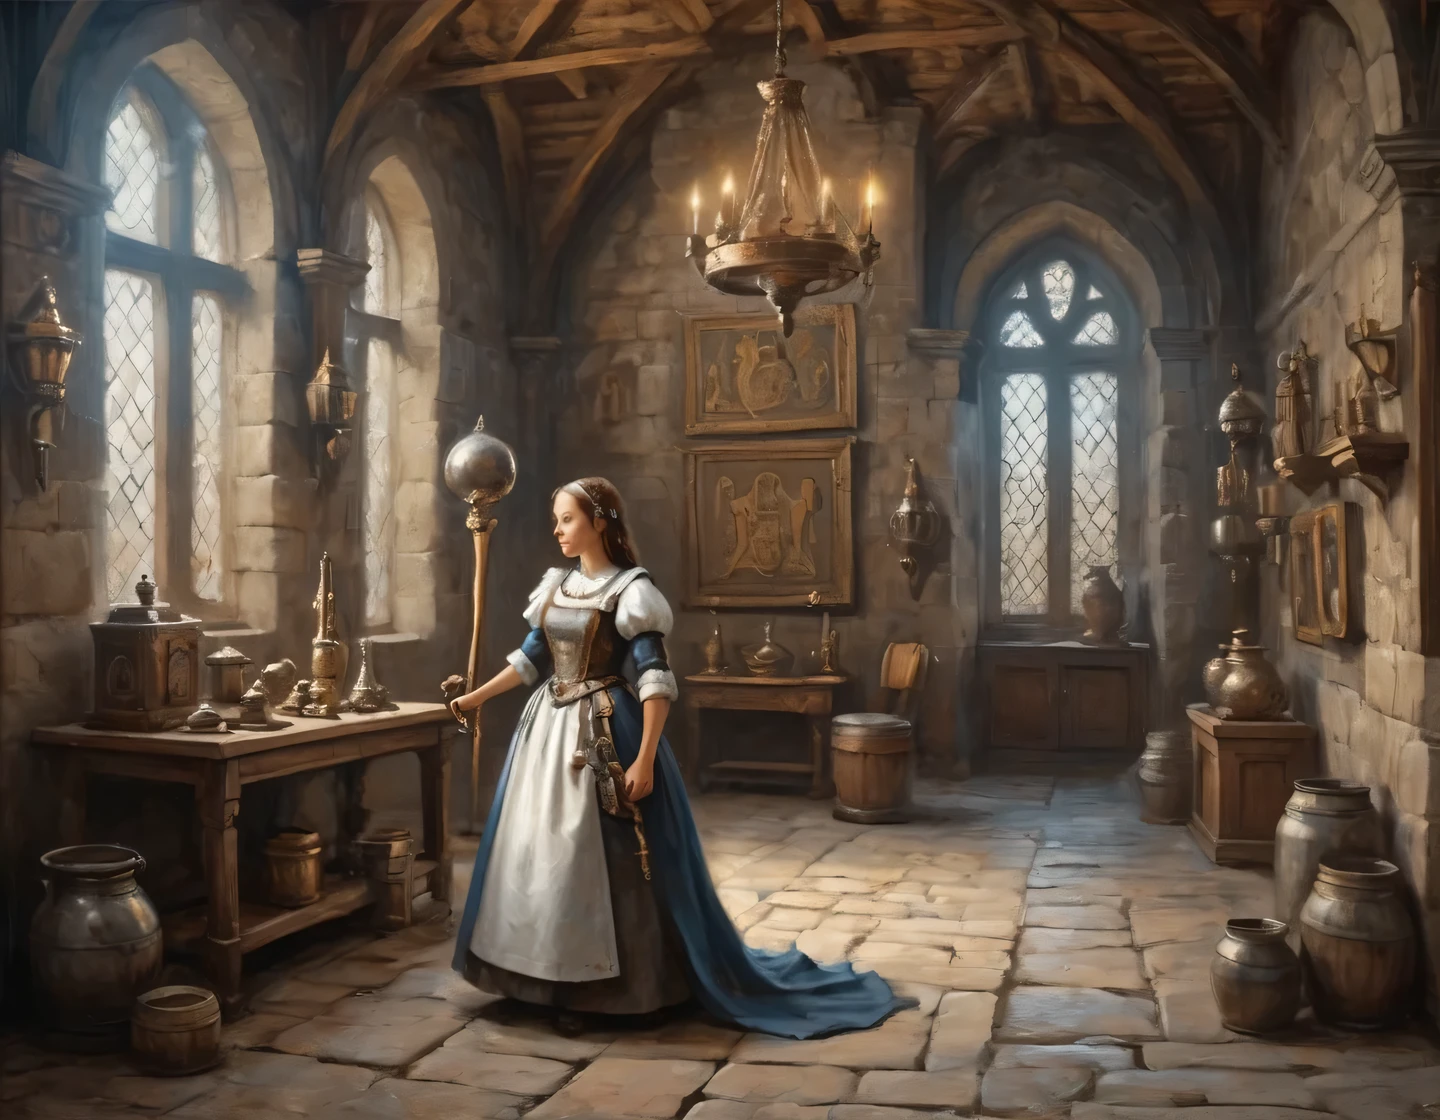 Una fotografía antigua, una chica cyborg vestida de sirvienta está construyendo en el salón de un castillo medieval, muebles medievales, trofeos y armas en las paredes, heráldica, Realista